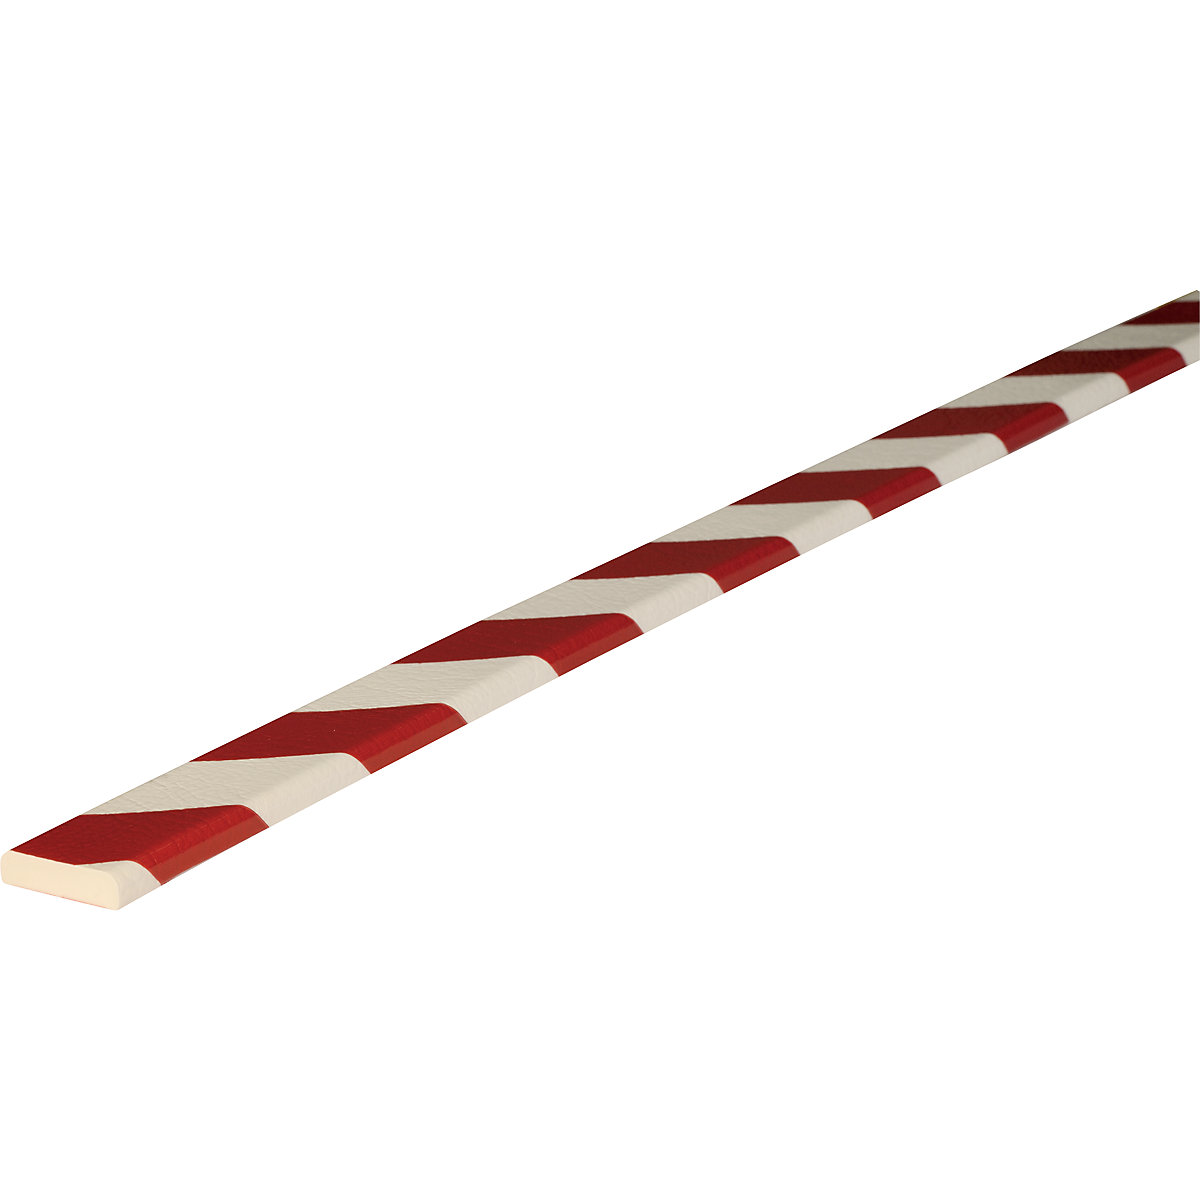 Protección de superficies Knuffi® – SHG, tipo F, corte individual, por m lin., en rojo y blanco-20